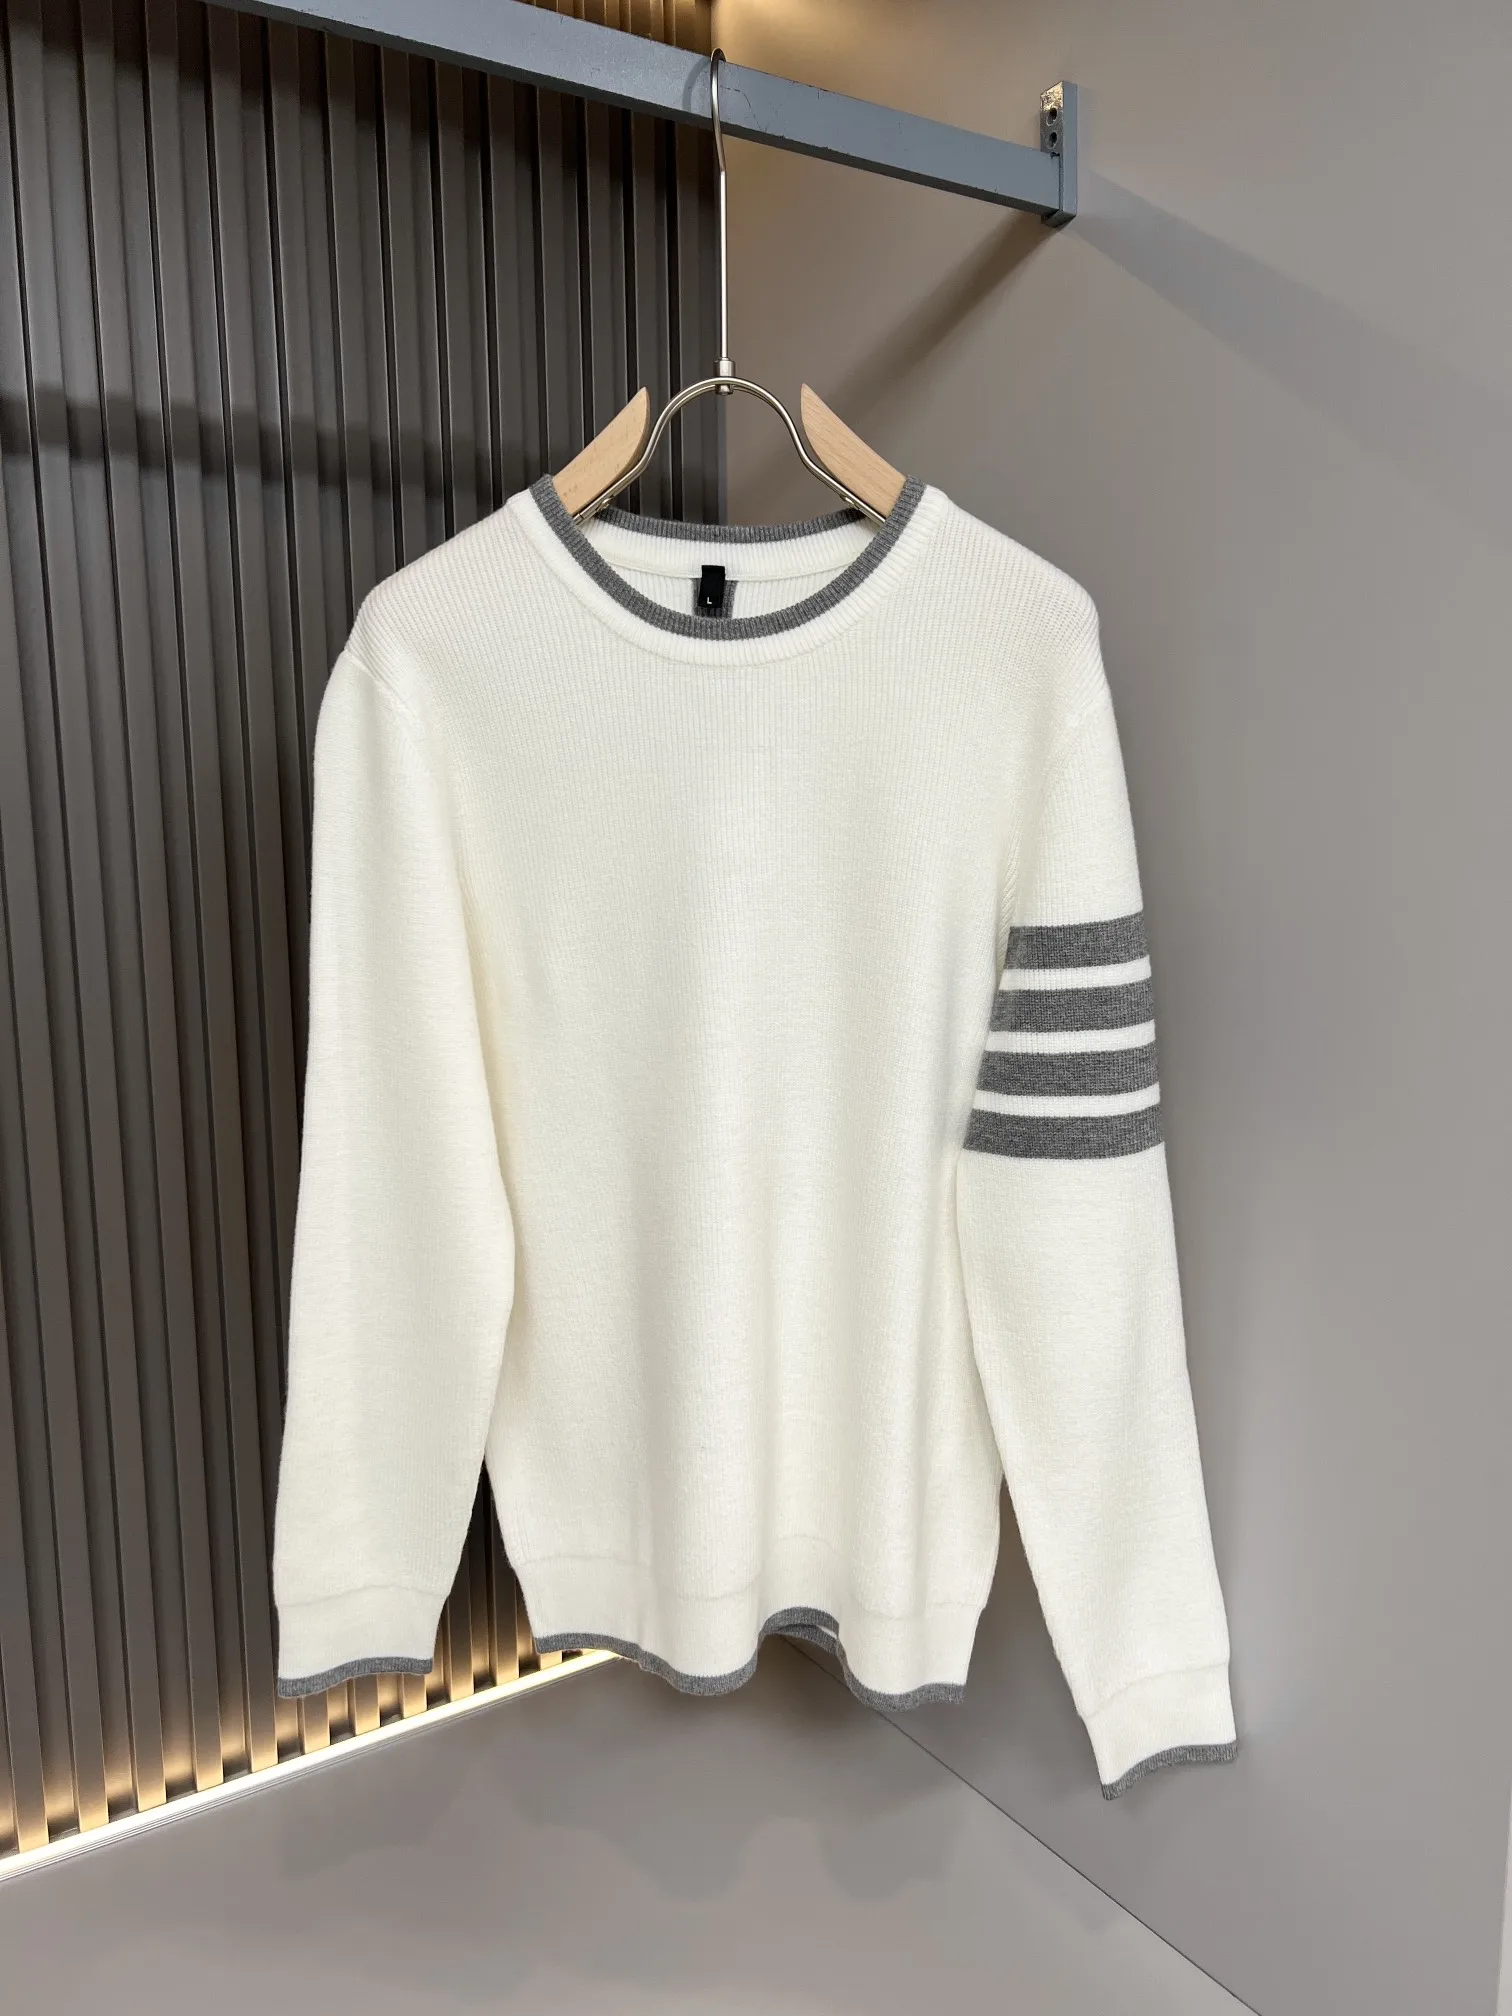 Зимний пуловер TTB, модный мужской свитер высокого качества в четыре полосы, жаккардовый грубый свитер с 7 иглами, мягкий повседневный мужской вязаный свитер